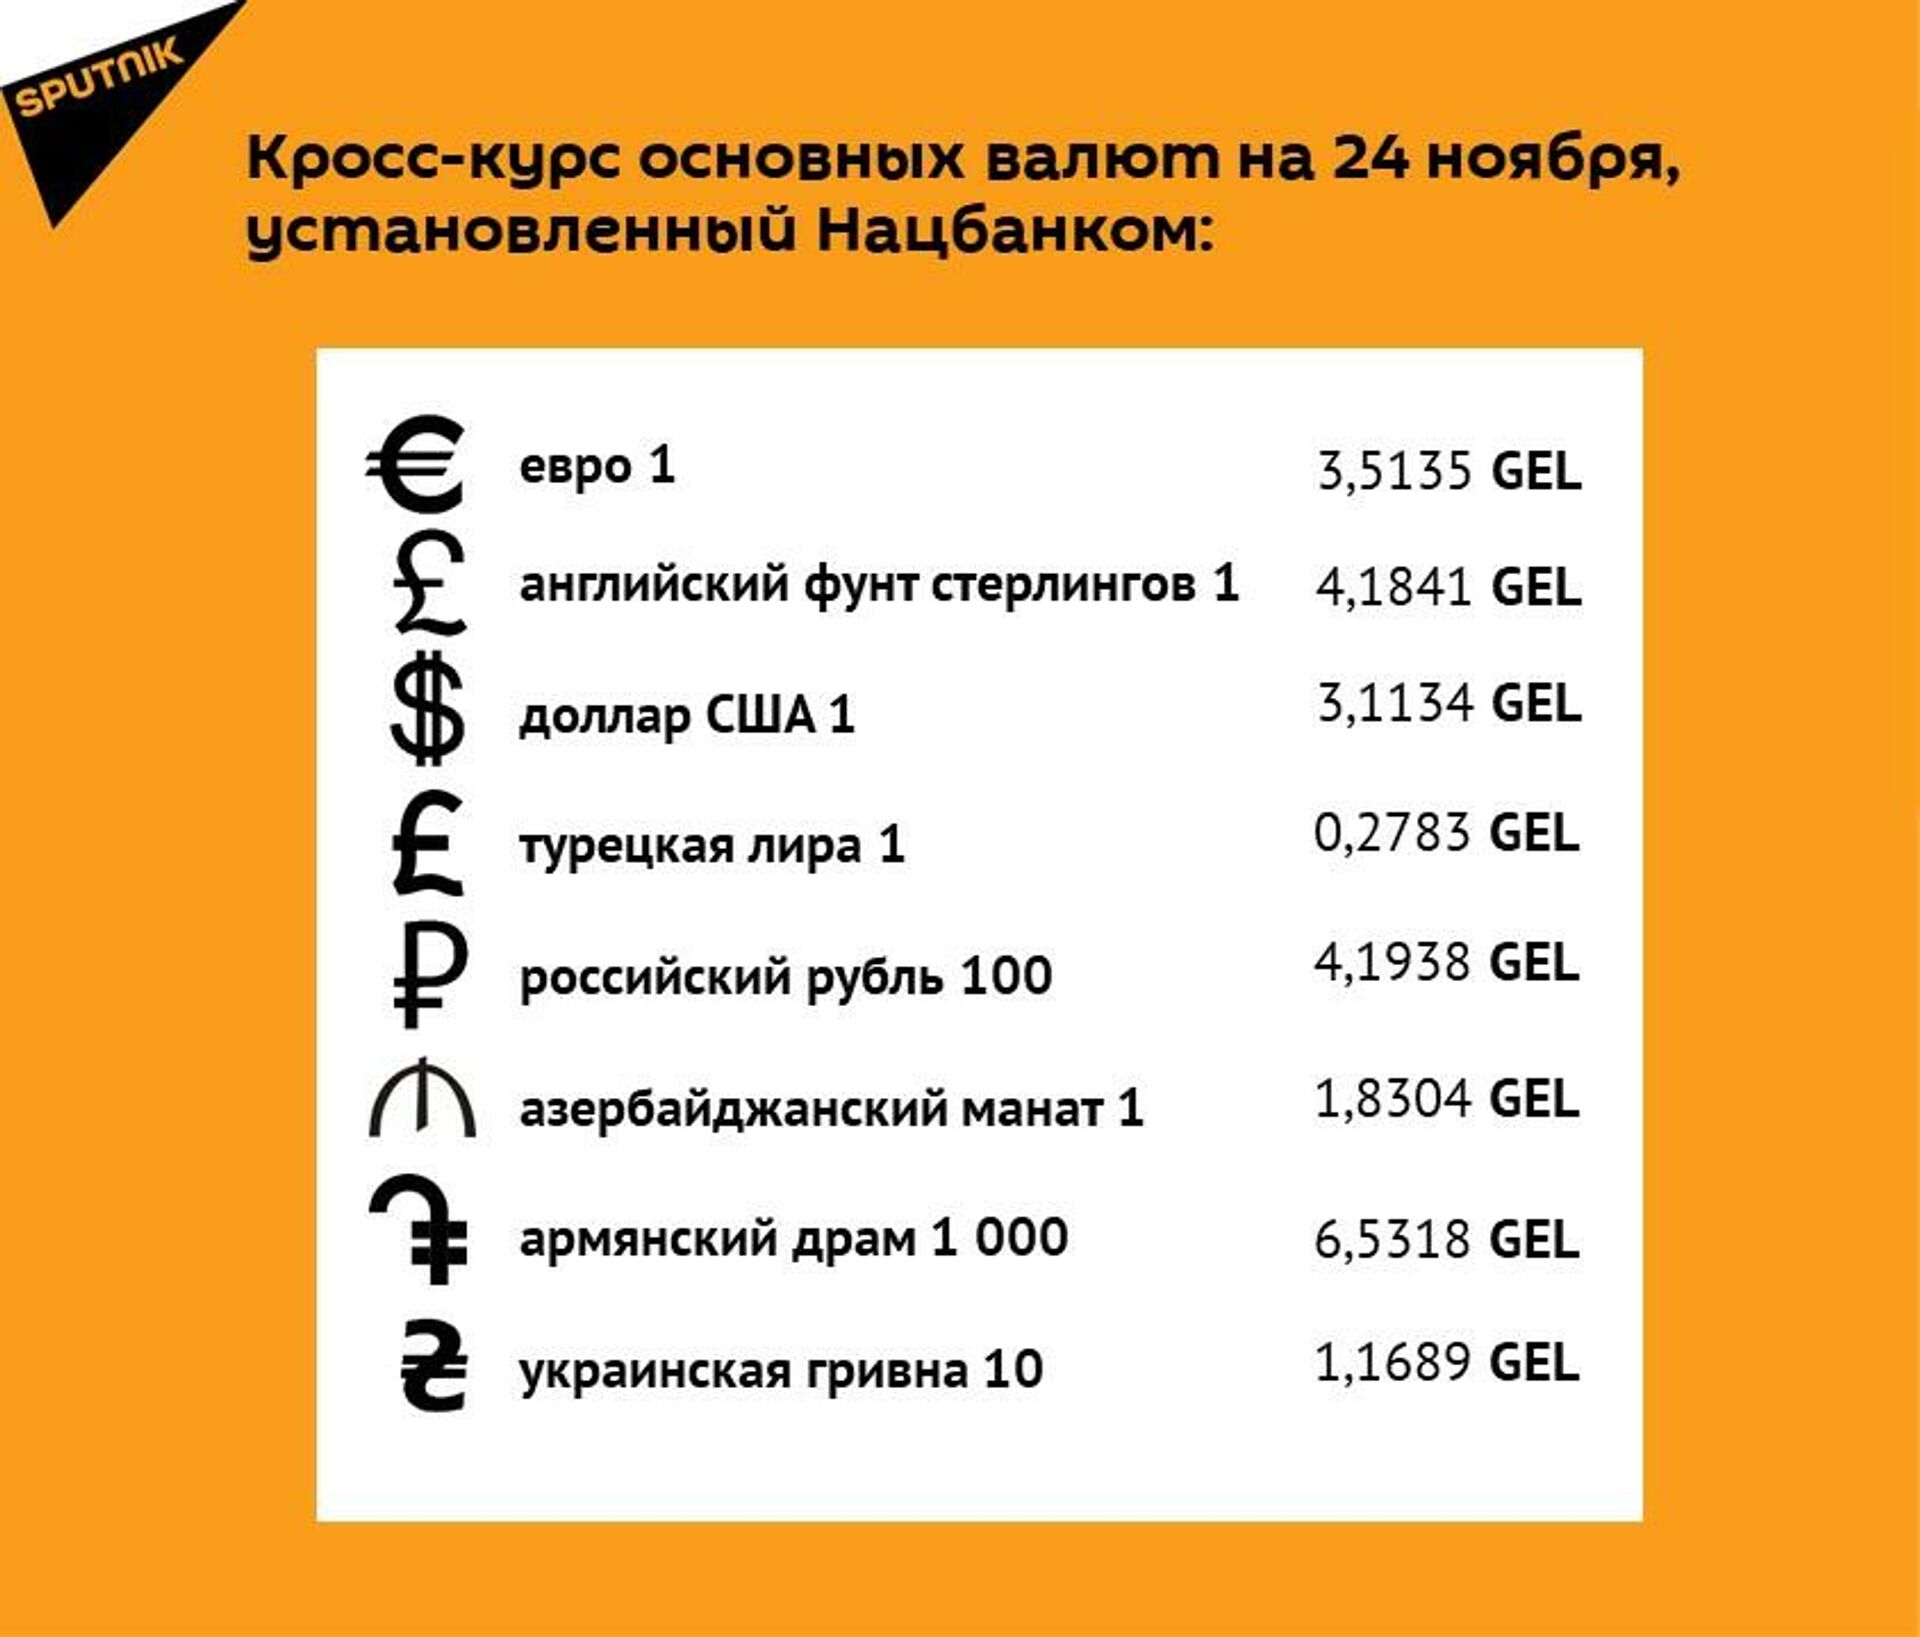 Кросс-курс основных валют на 24 ноября - Sputnik Грузия, 1920, 22.11.2021